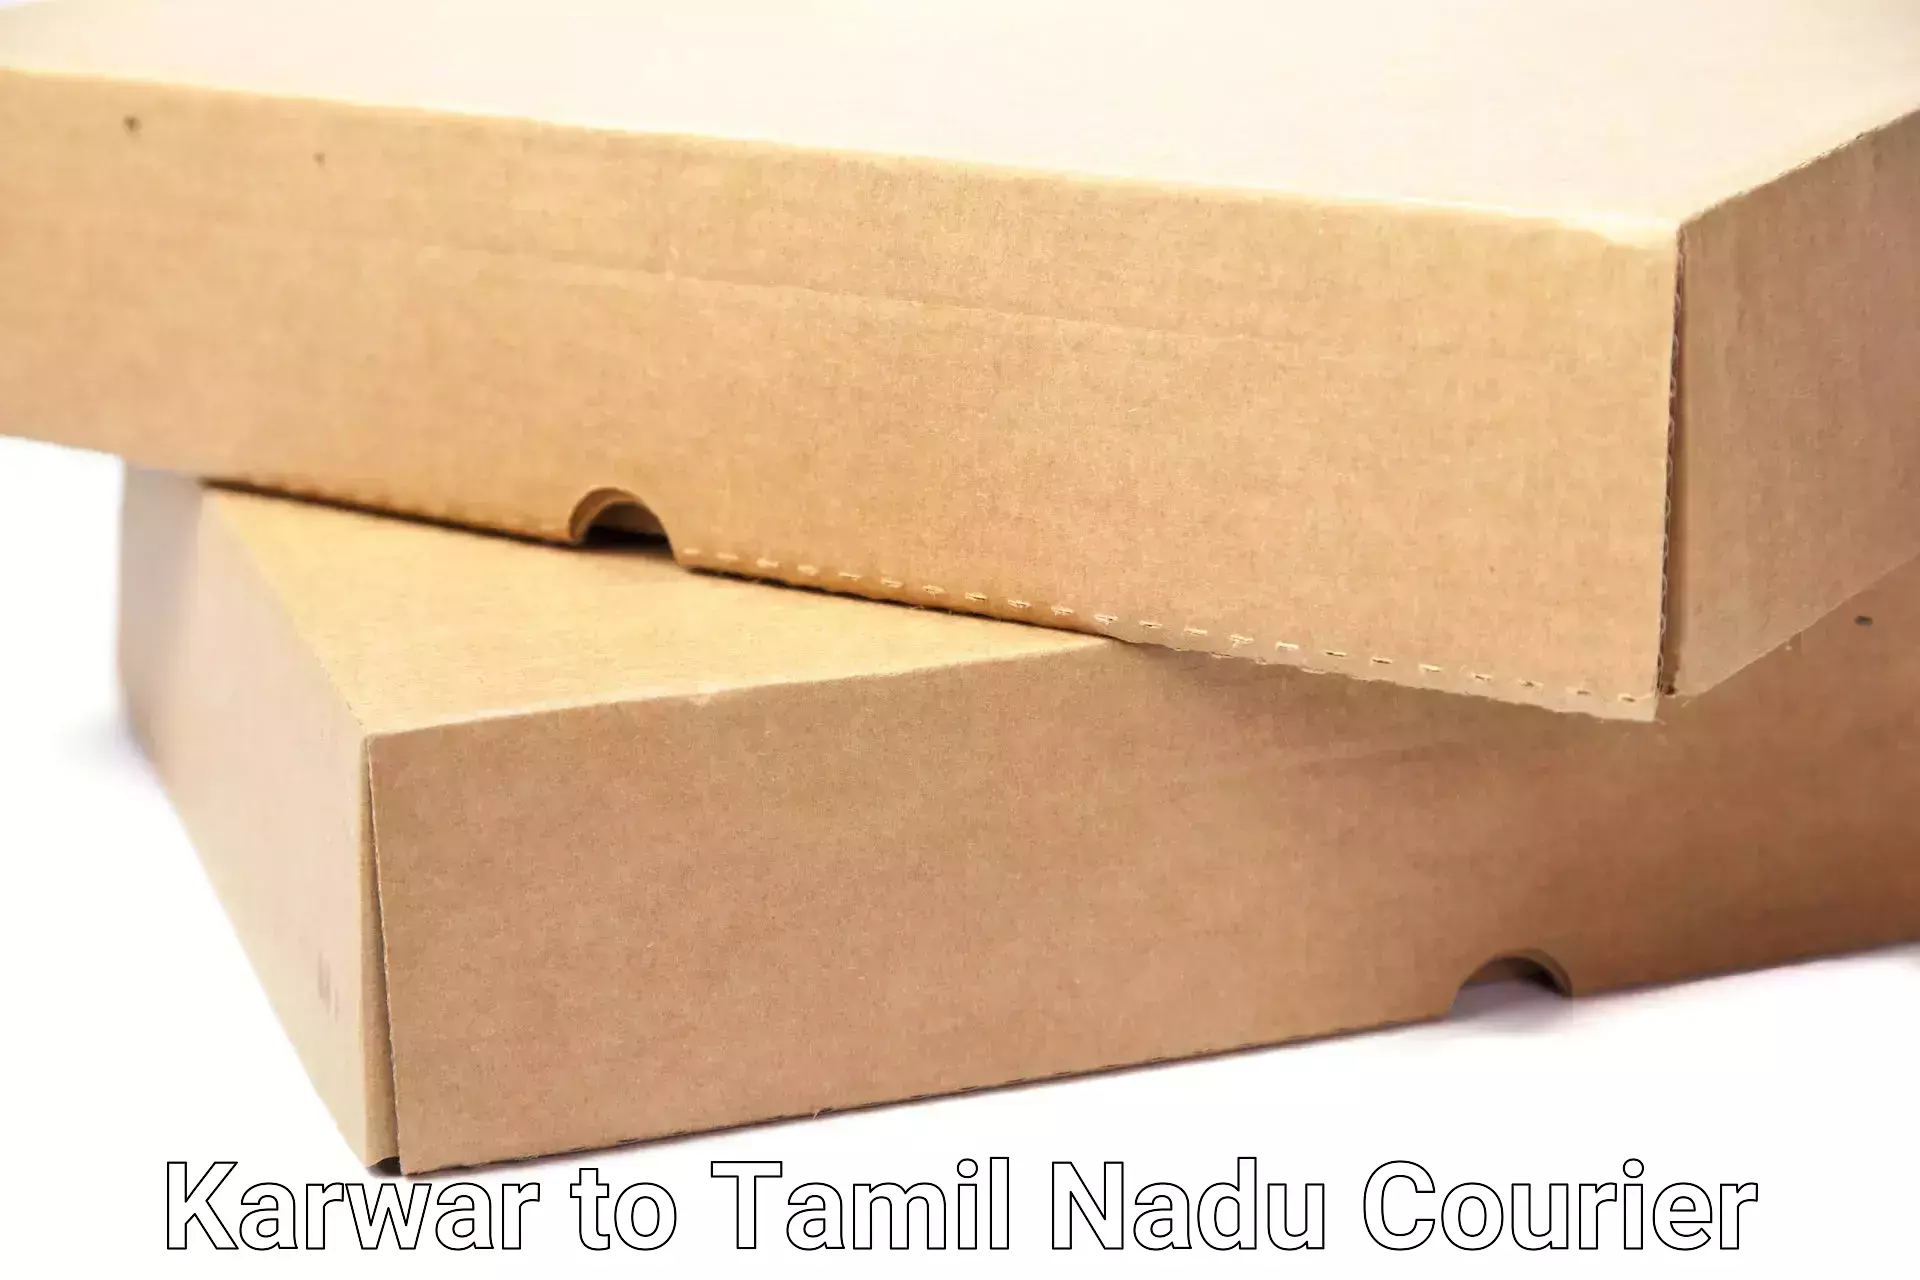 Furniture moving specialists Karwar to Tamil Nadu